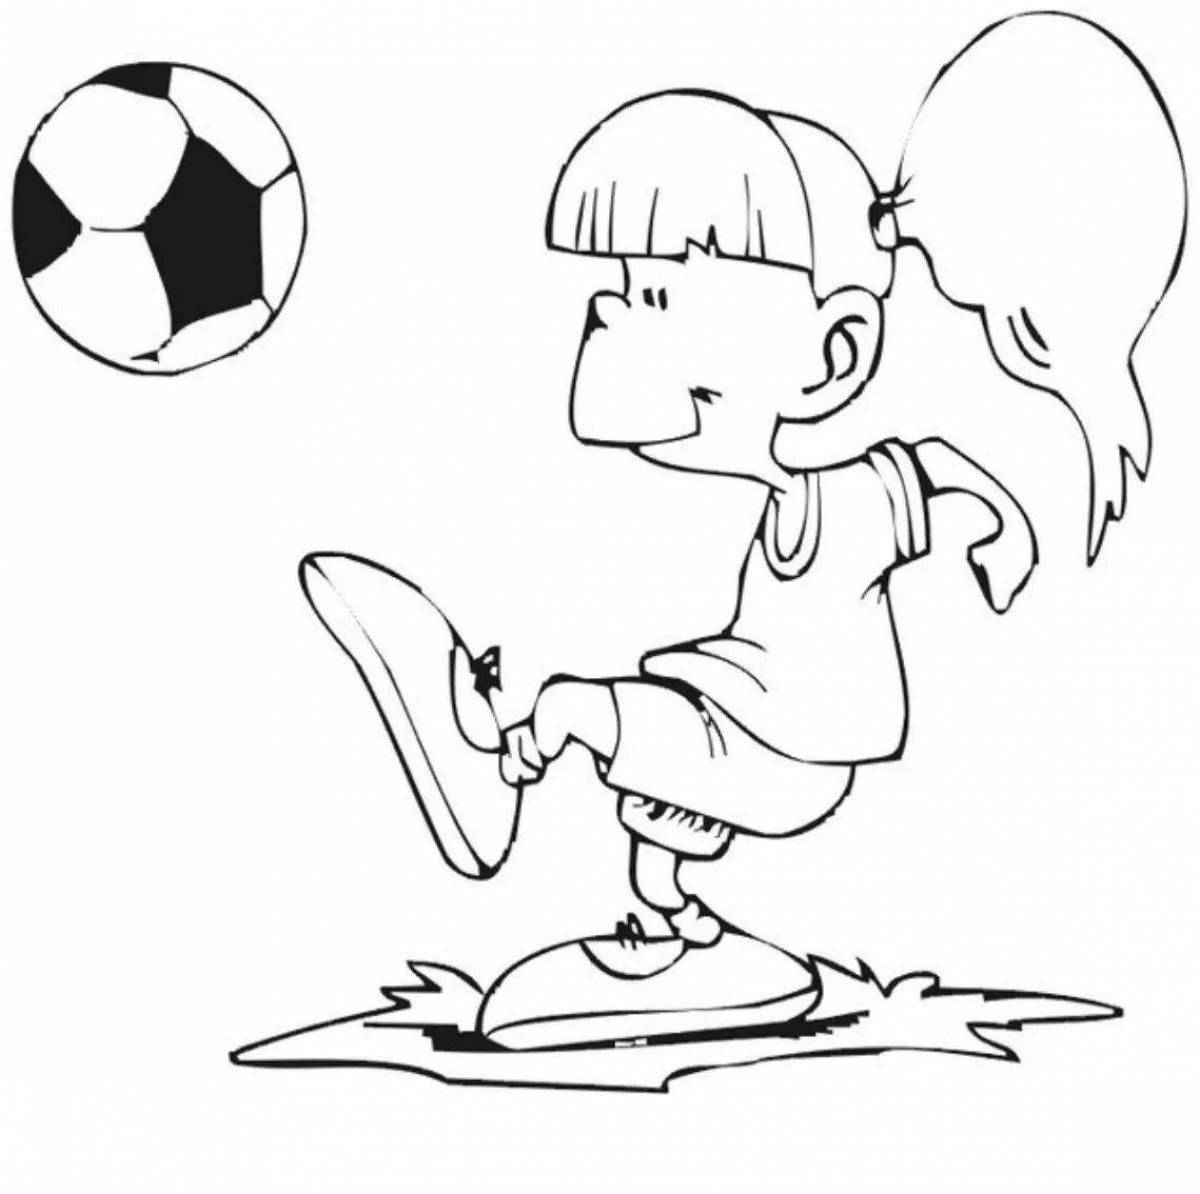 Игривая футбольная раскраска для детей